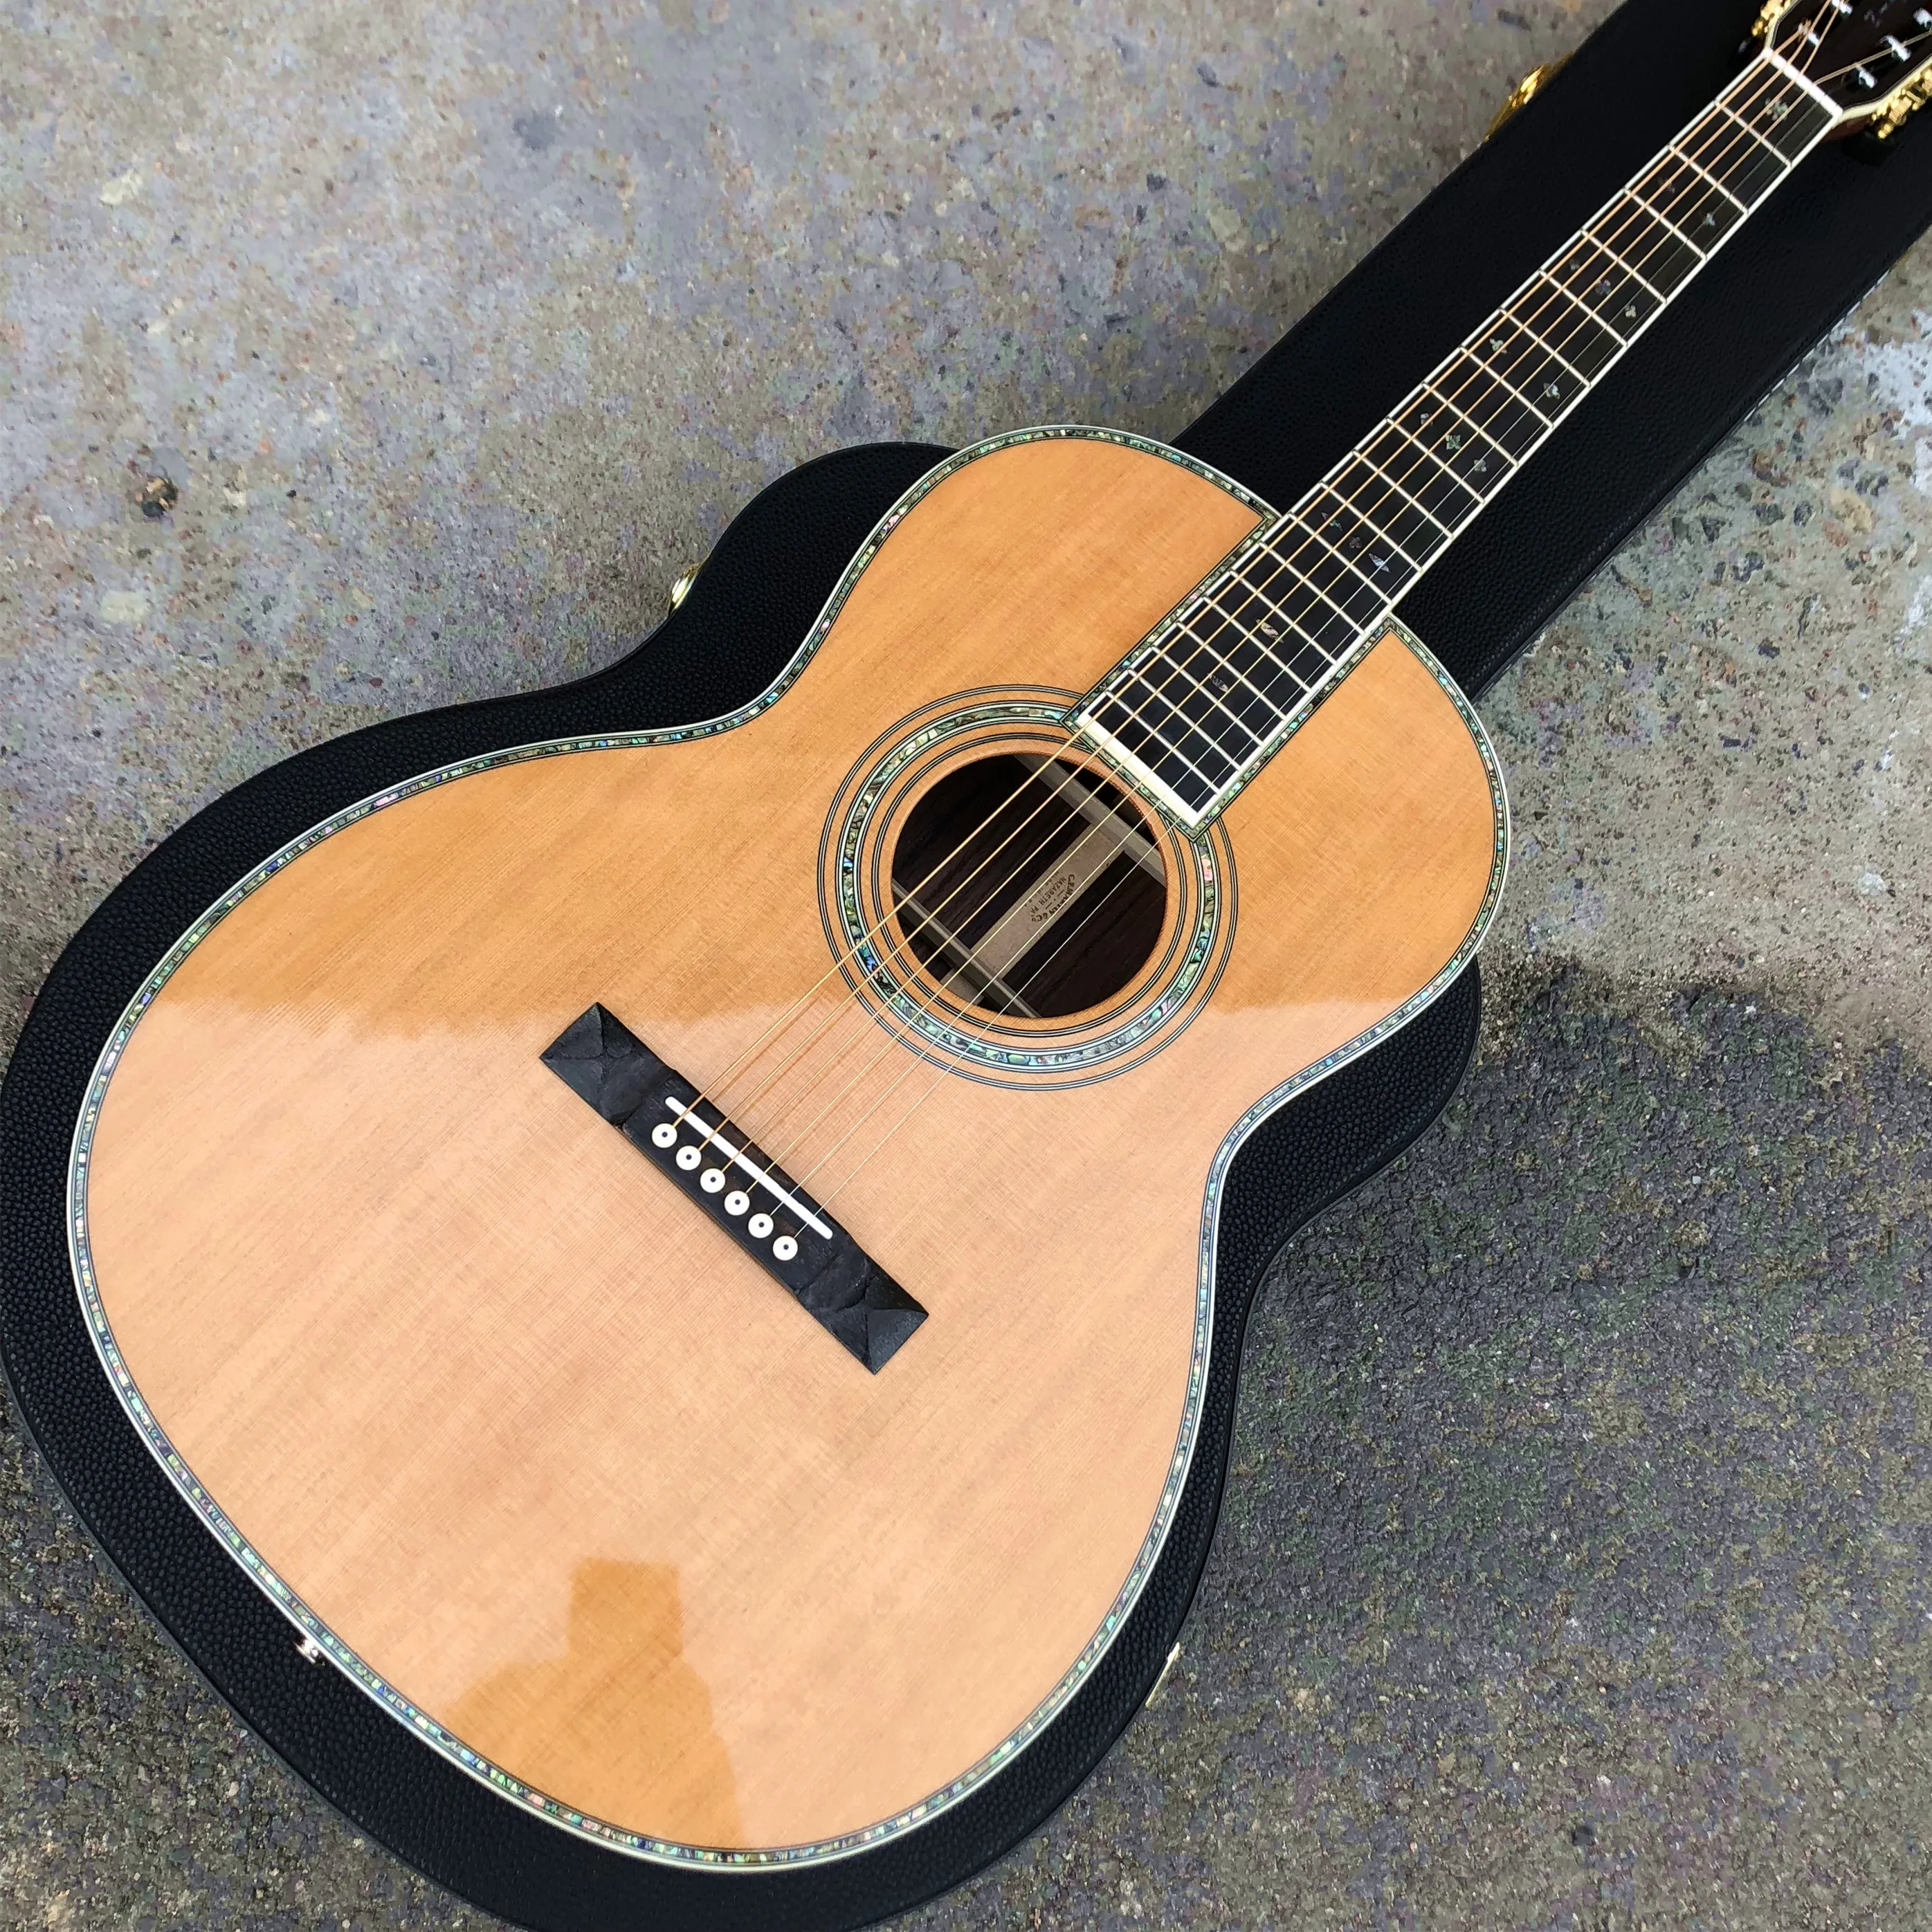 

Настоящая Акустическая гитара abalone типа 000, 39 дюймов, твердая кедровая гитара ooo, задняя и боковая гитара из розового дерева